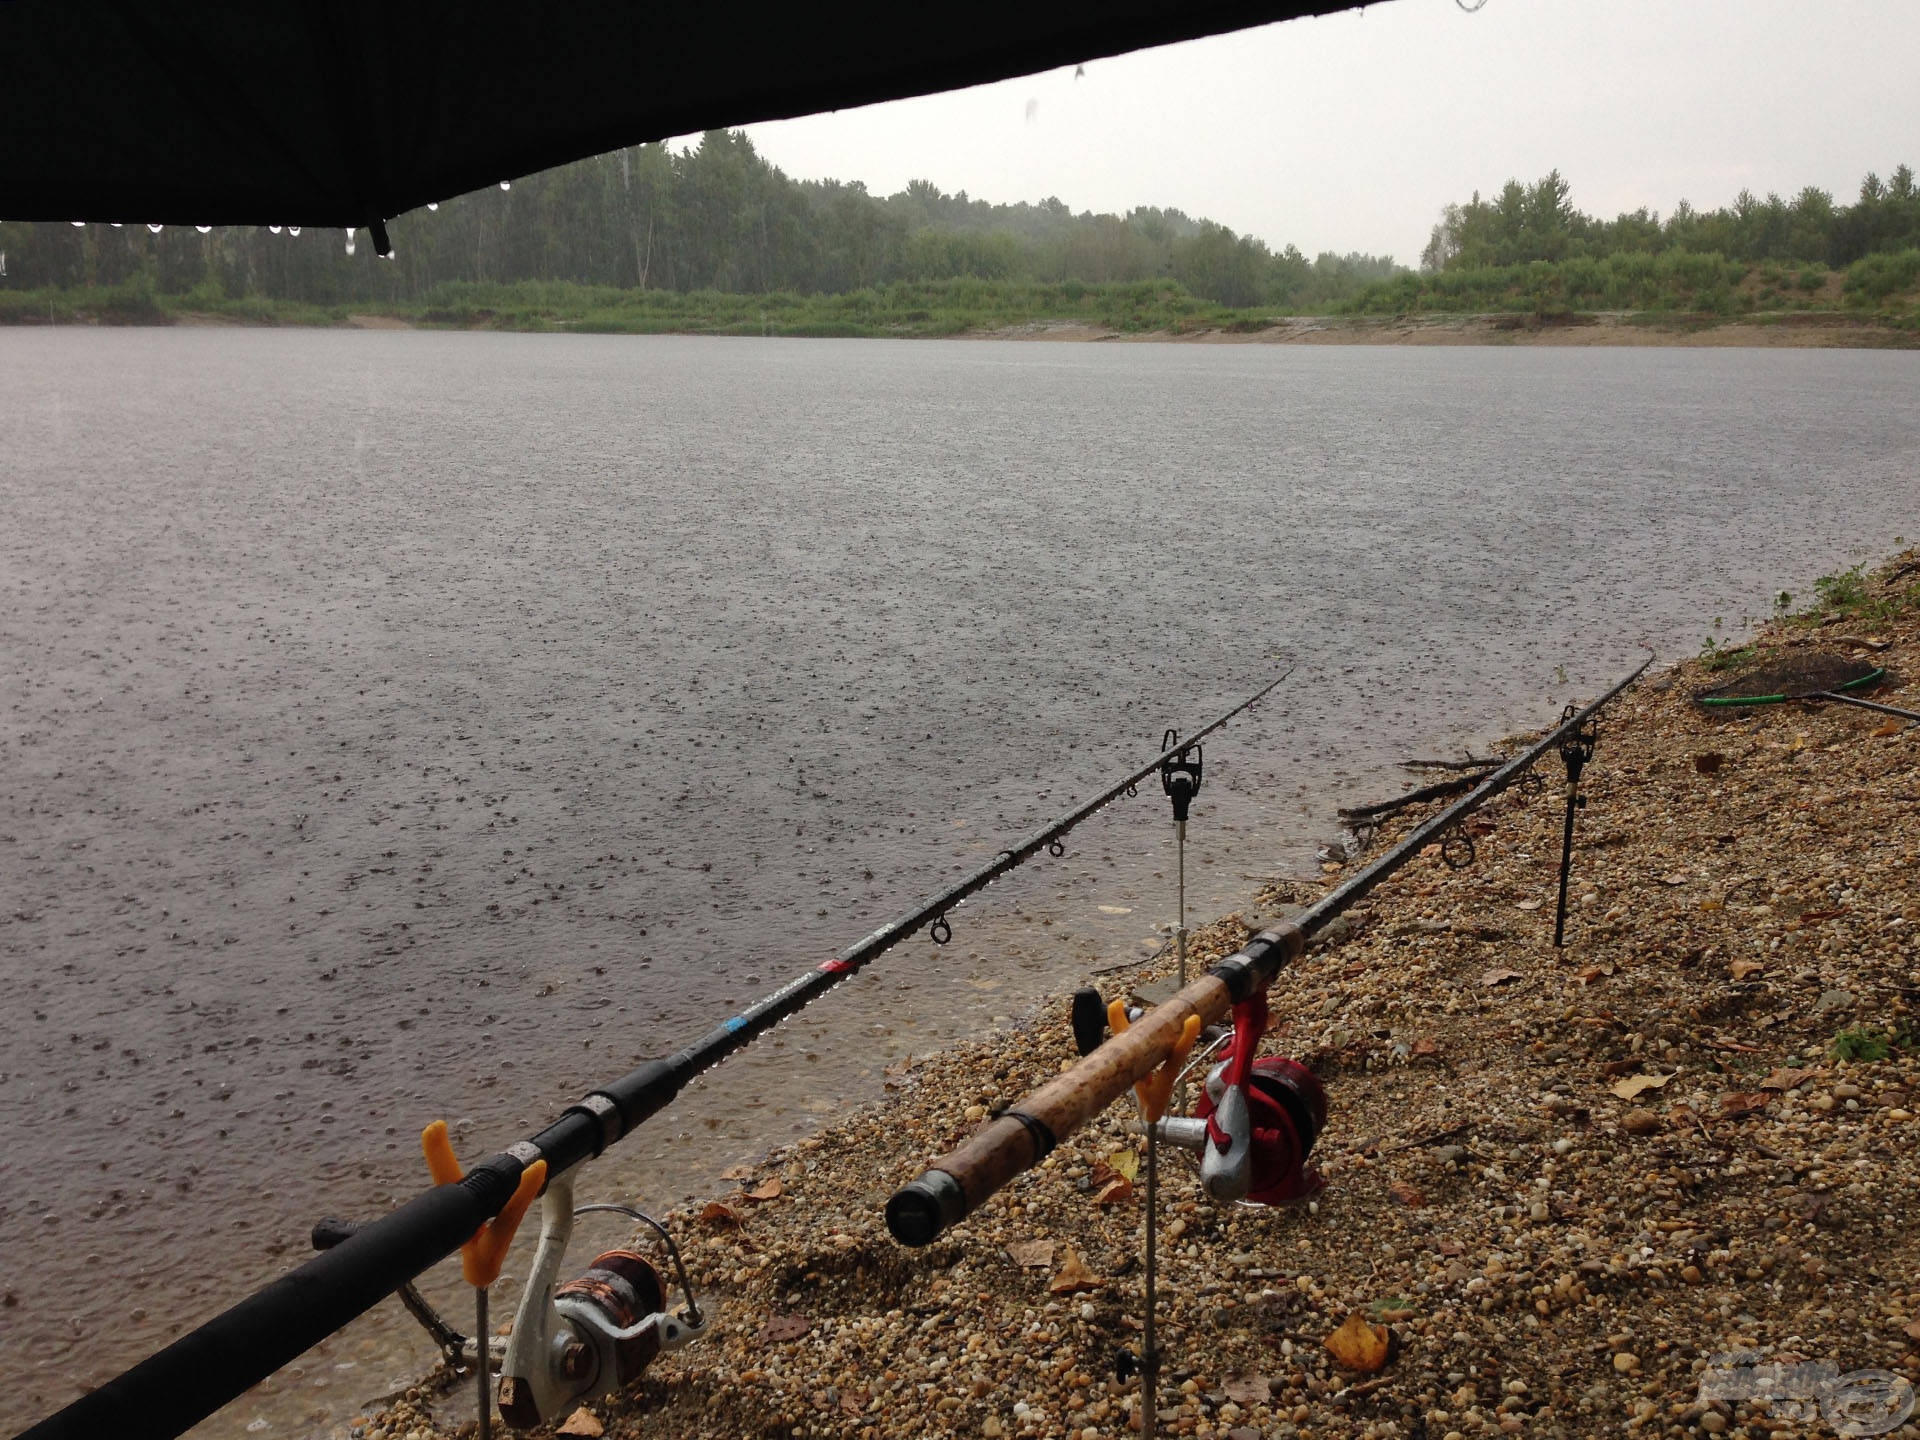 A rossz idő sem tántoríthat el egy jó horgászattól